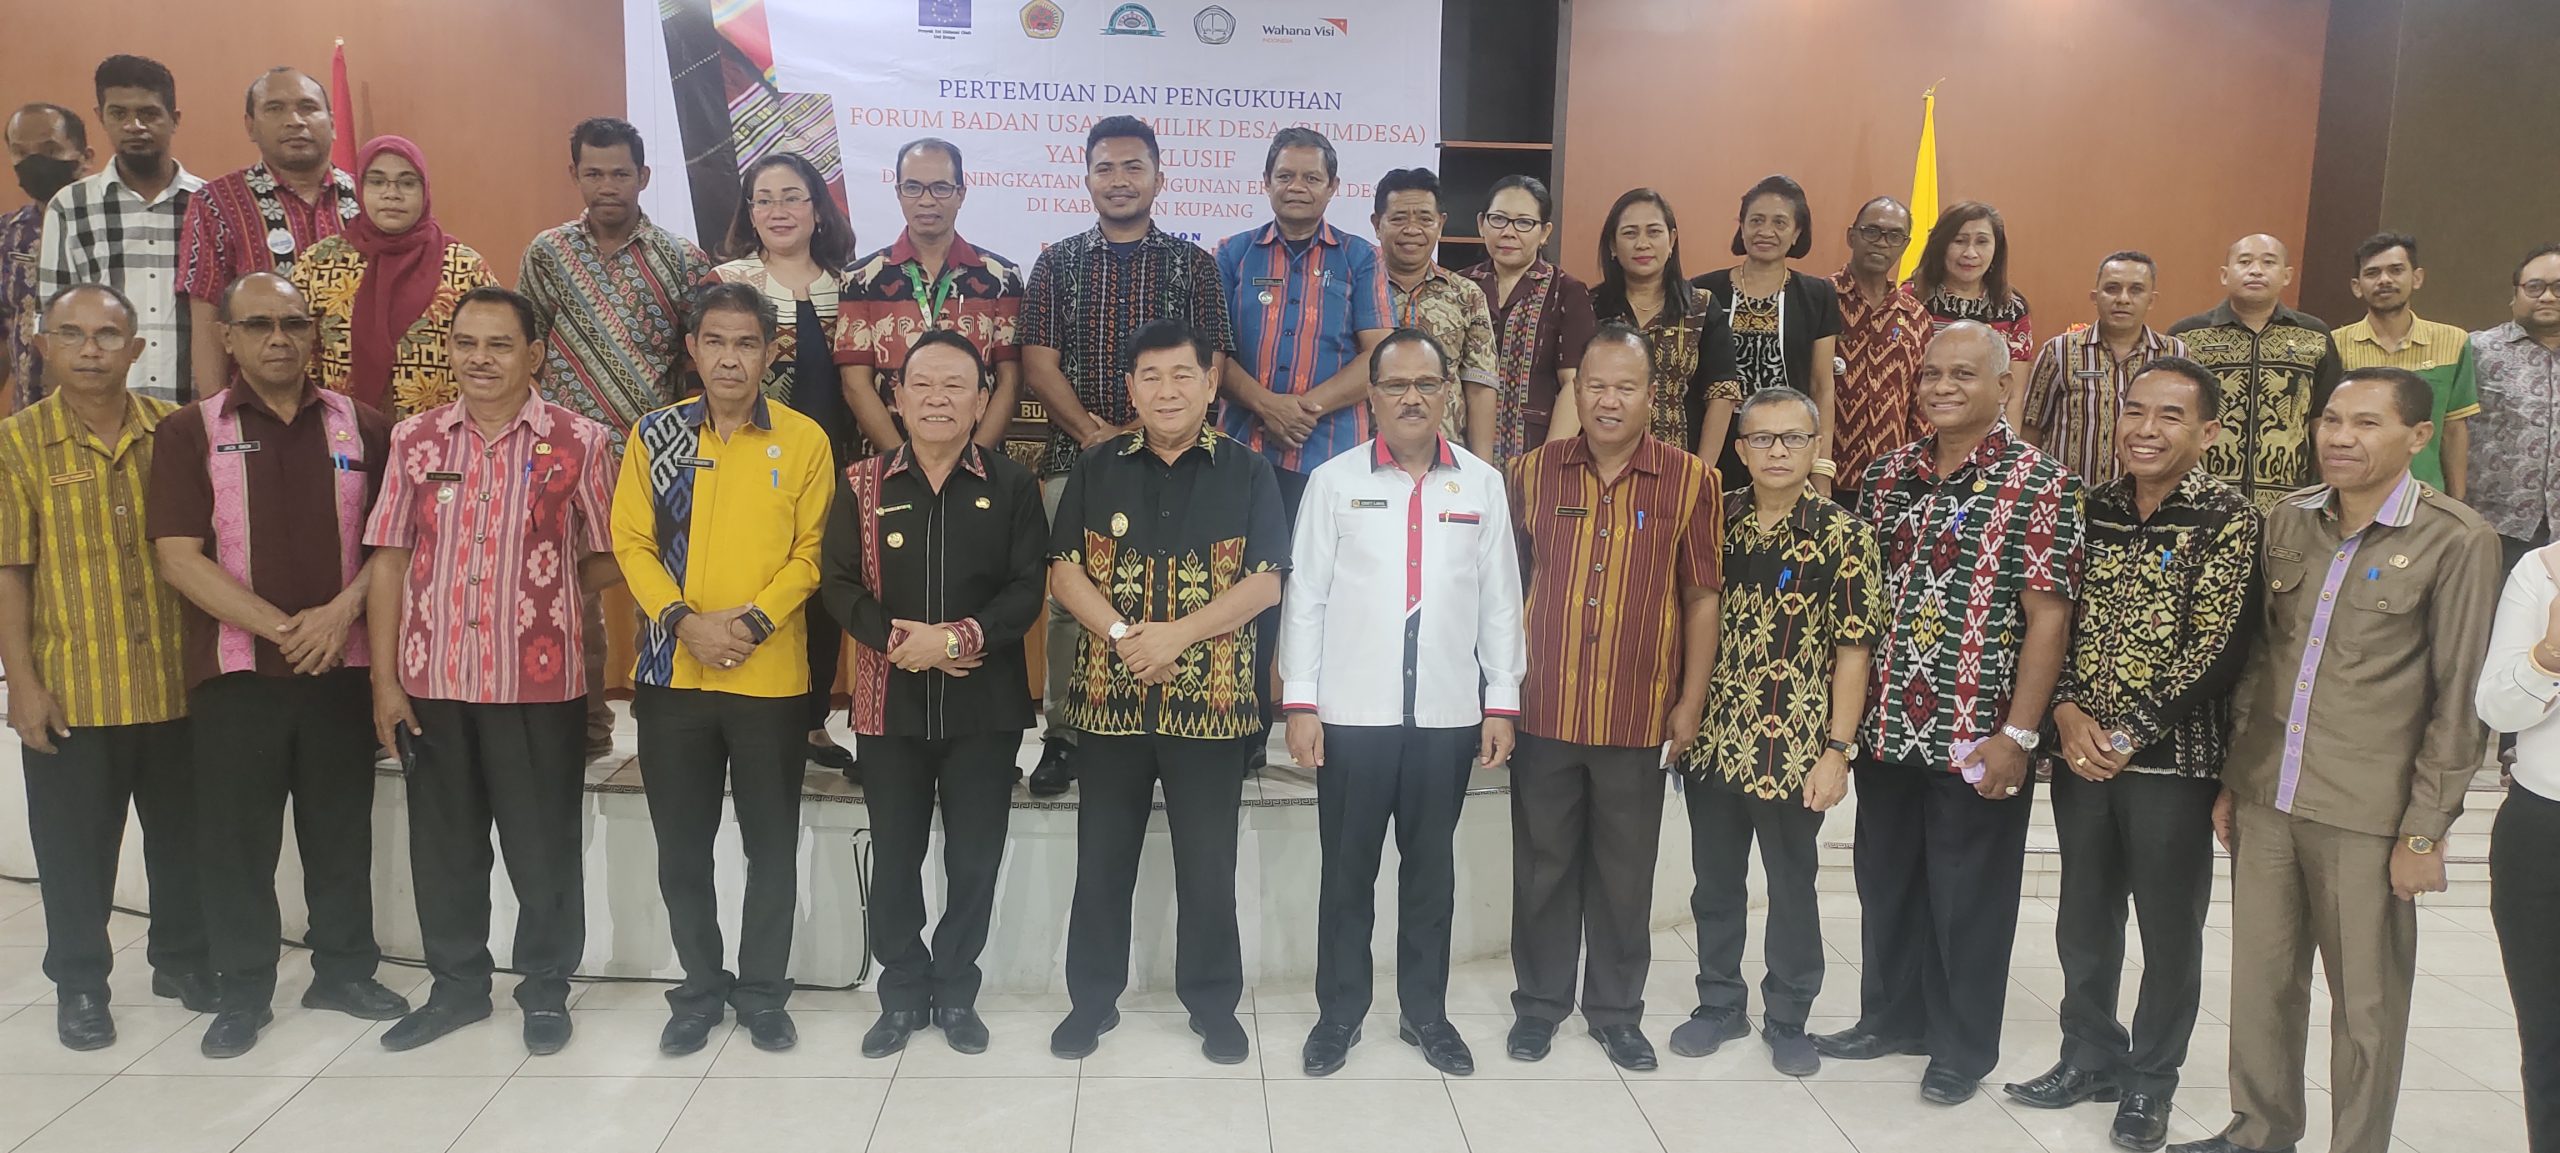 Foto. Pengukuhan Forum Pengurus Bumdes Tingkat  Kabupaten Kupang.
